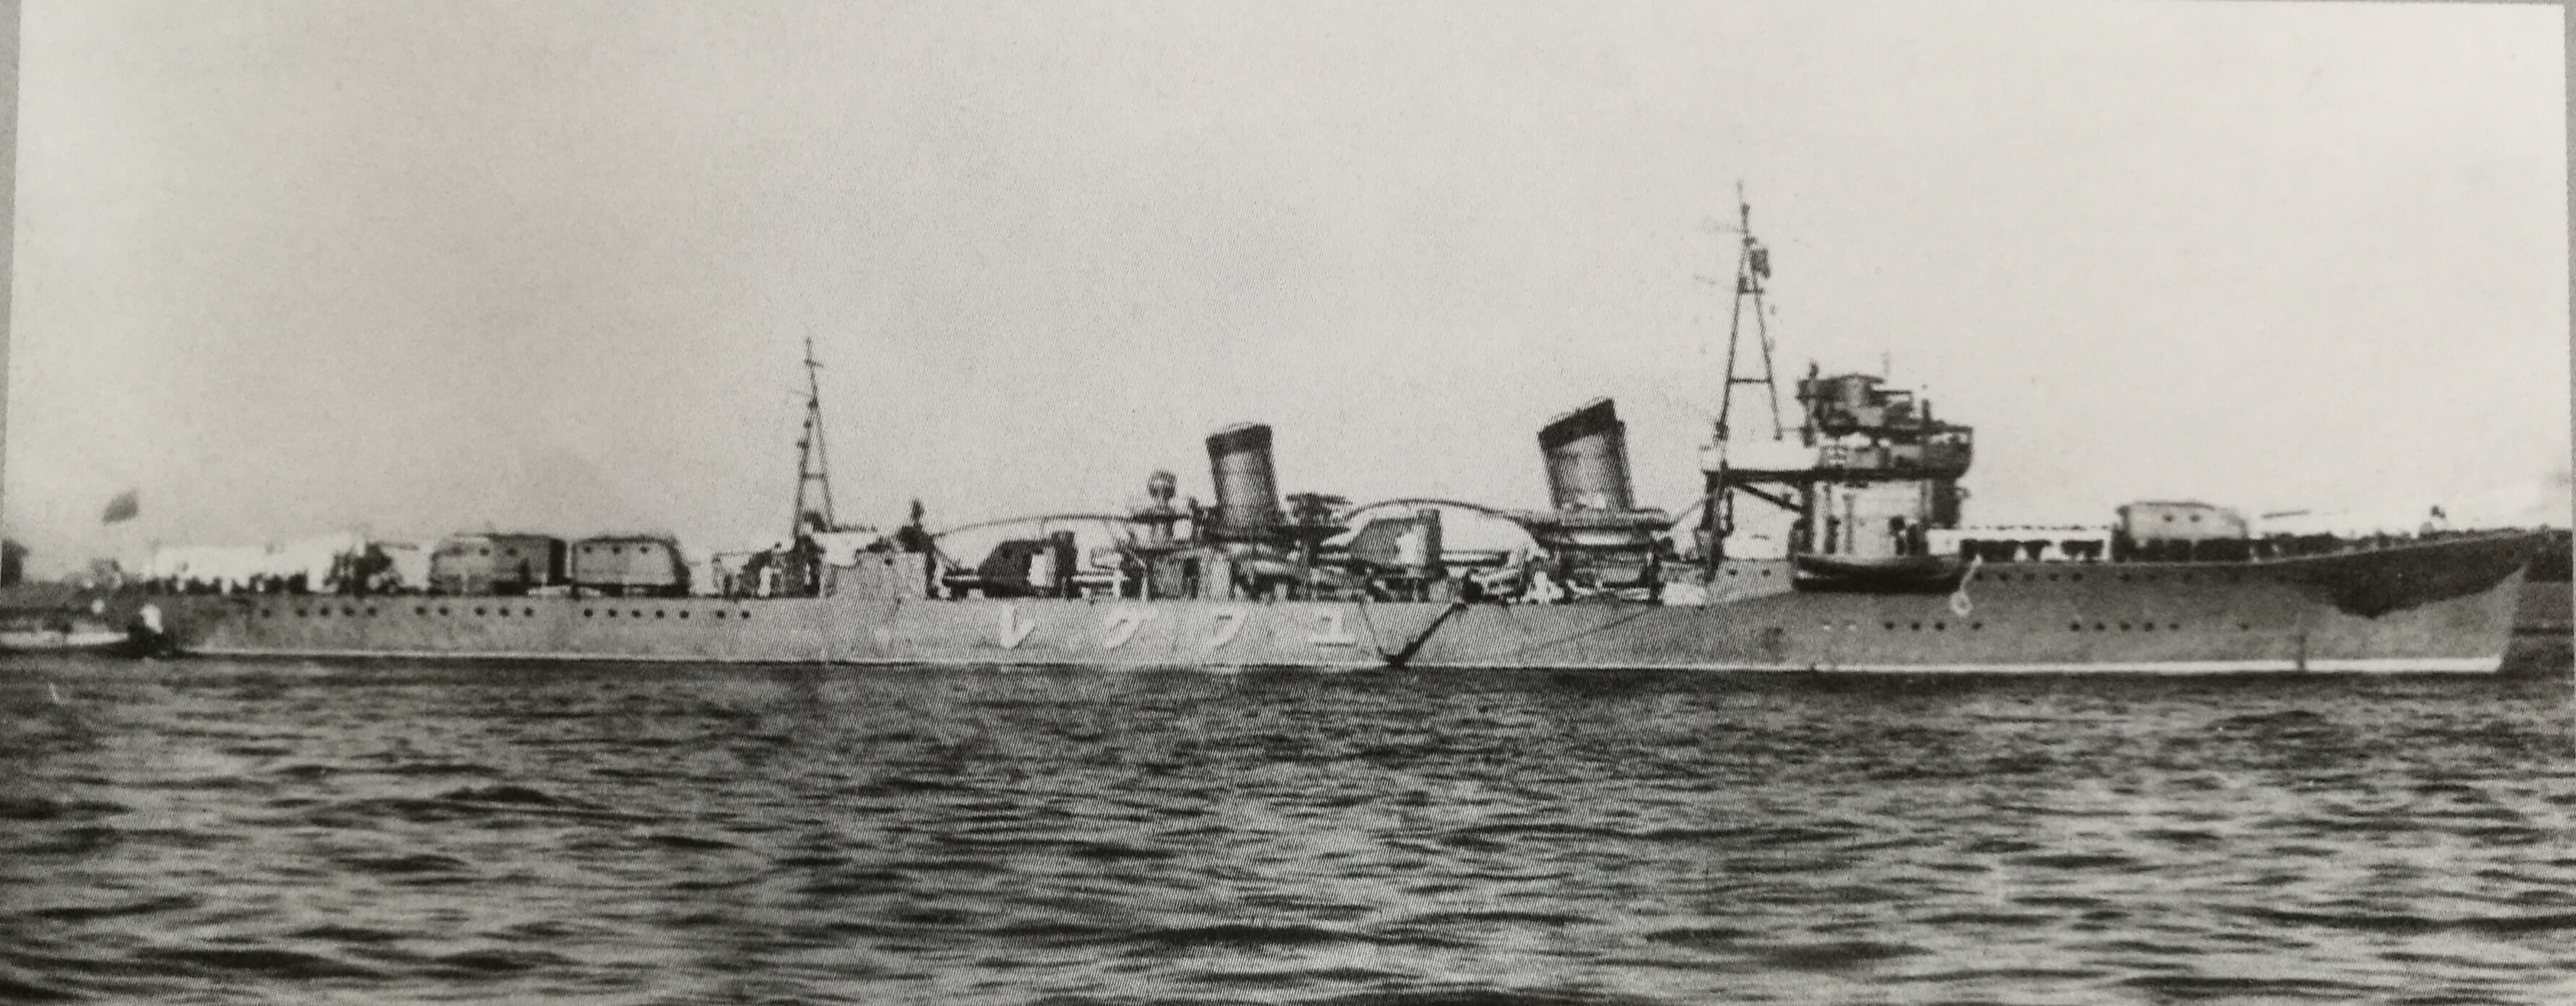 夕暮號驅逐艦，1935年攝於東京灣